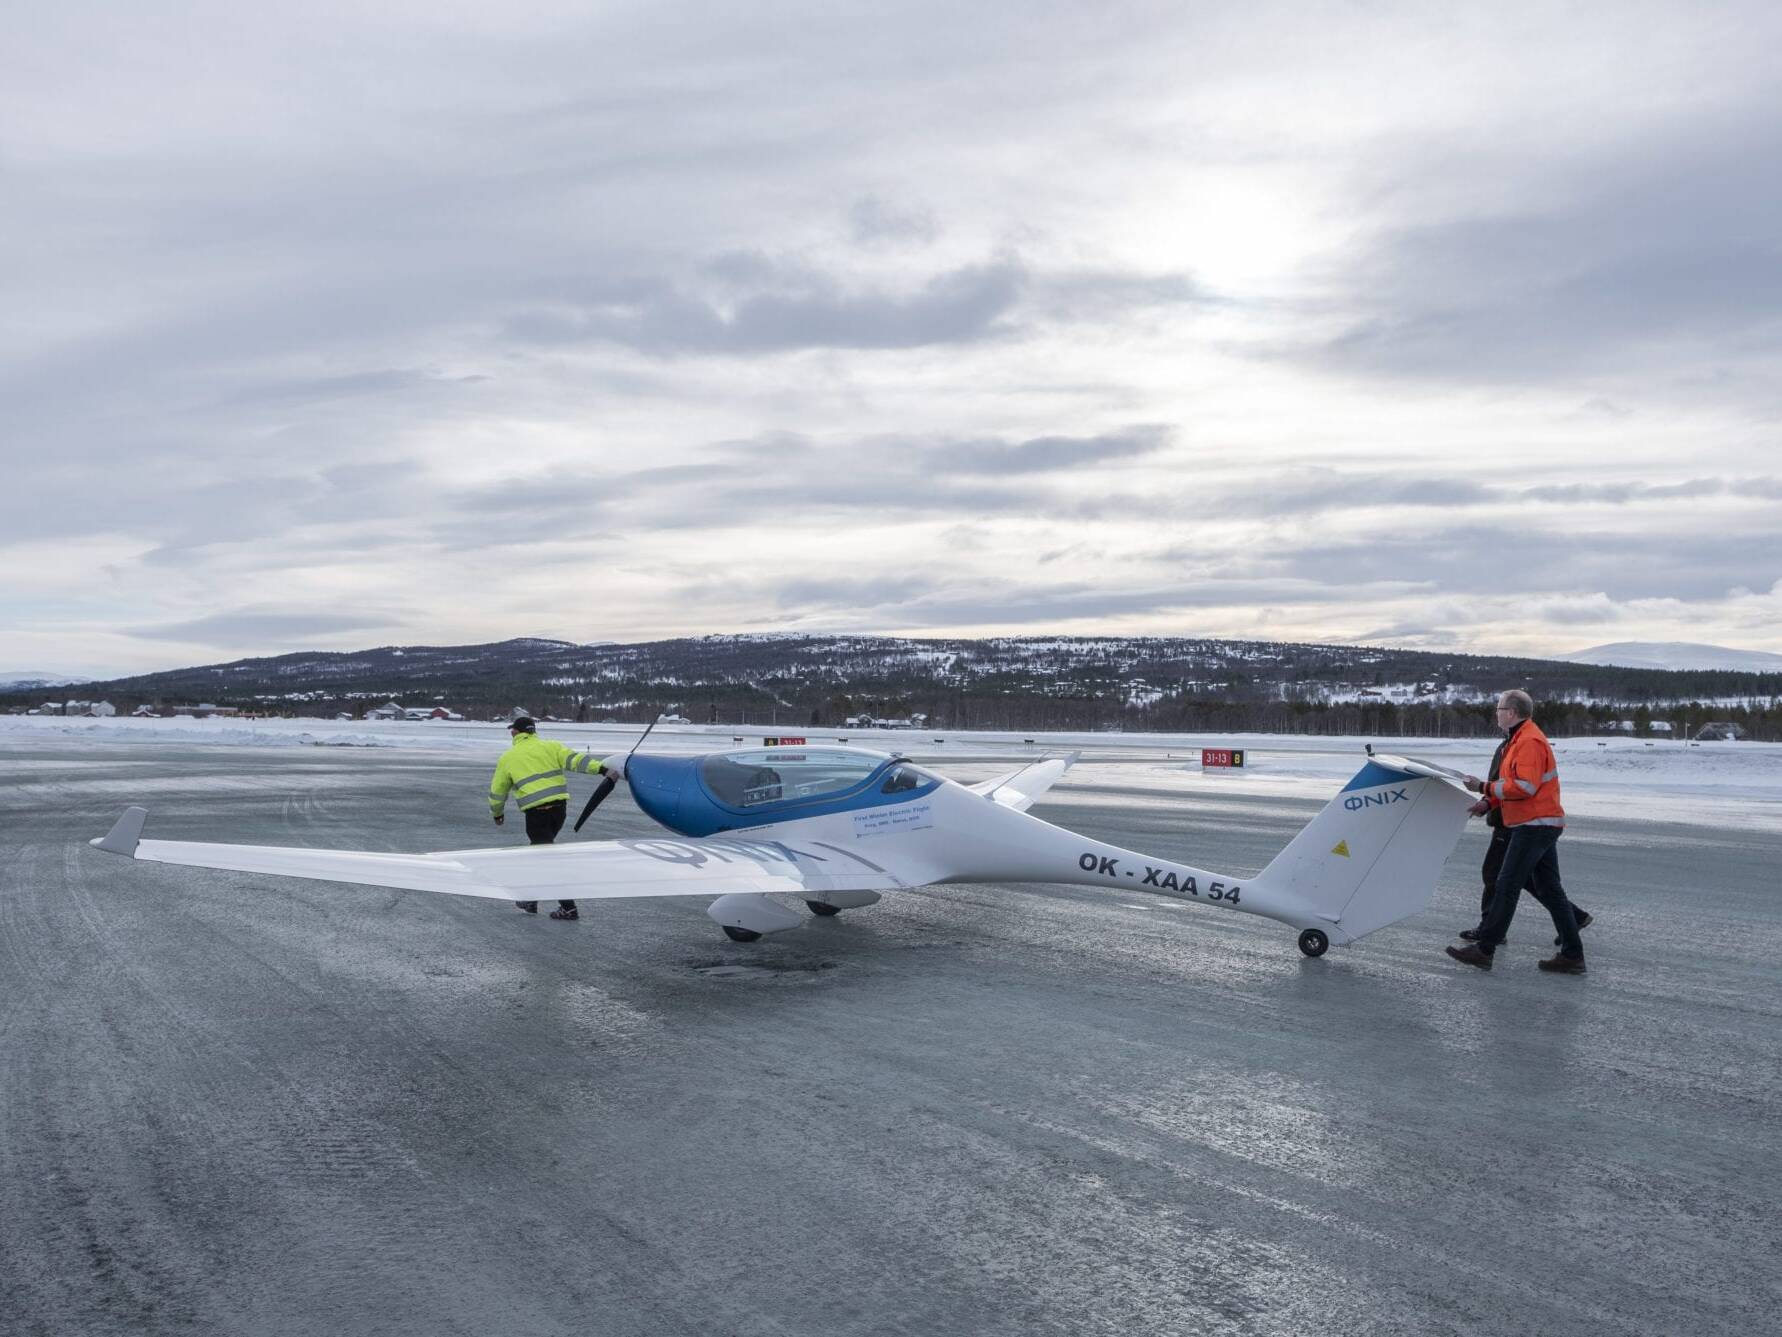 Verdens første grensekryssende vinterflygning med el-fly landet på Røros lufthavn den 18.2. Foto: Kurt Näslund